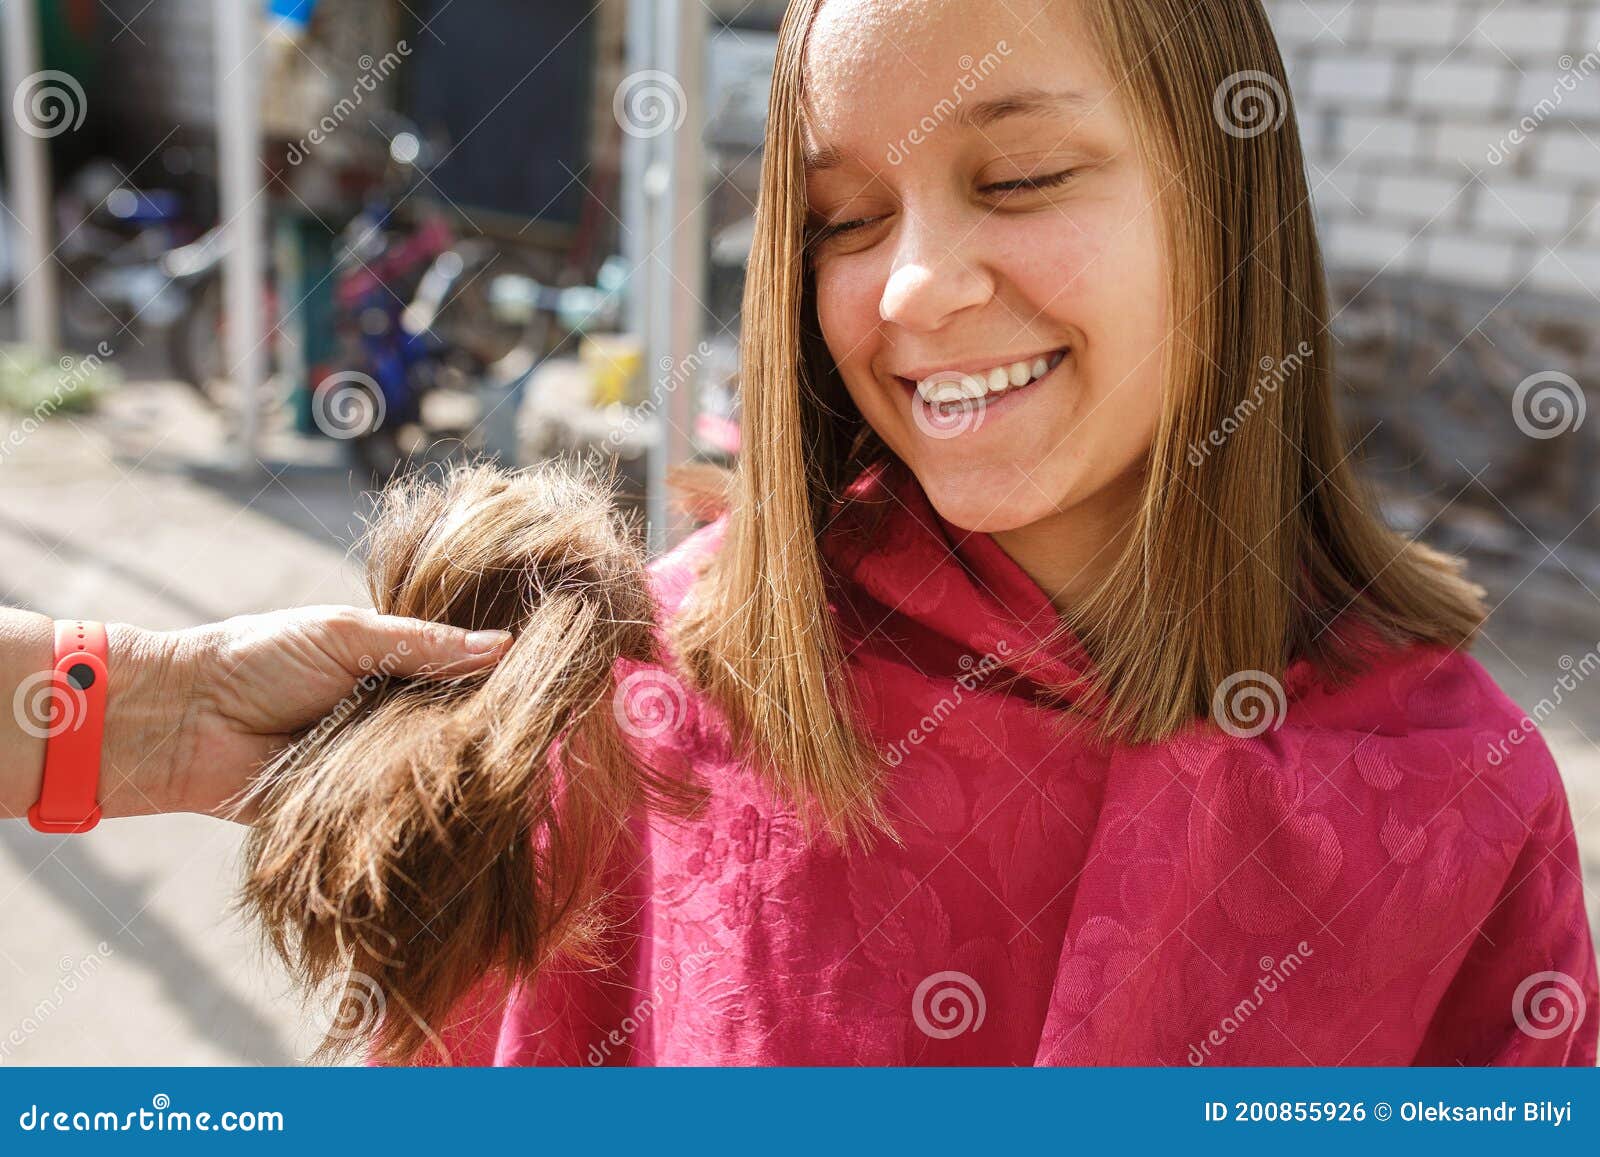 年轻女子在理发店剪头发-蓝牛仔影像-中国原创广告影像素材